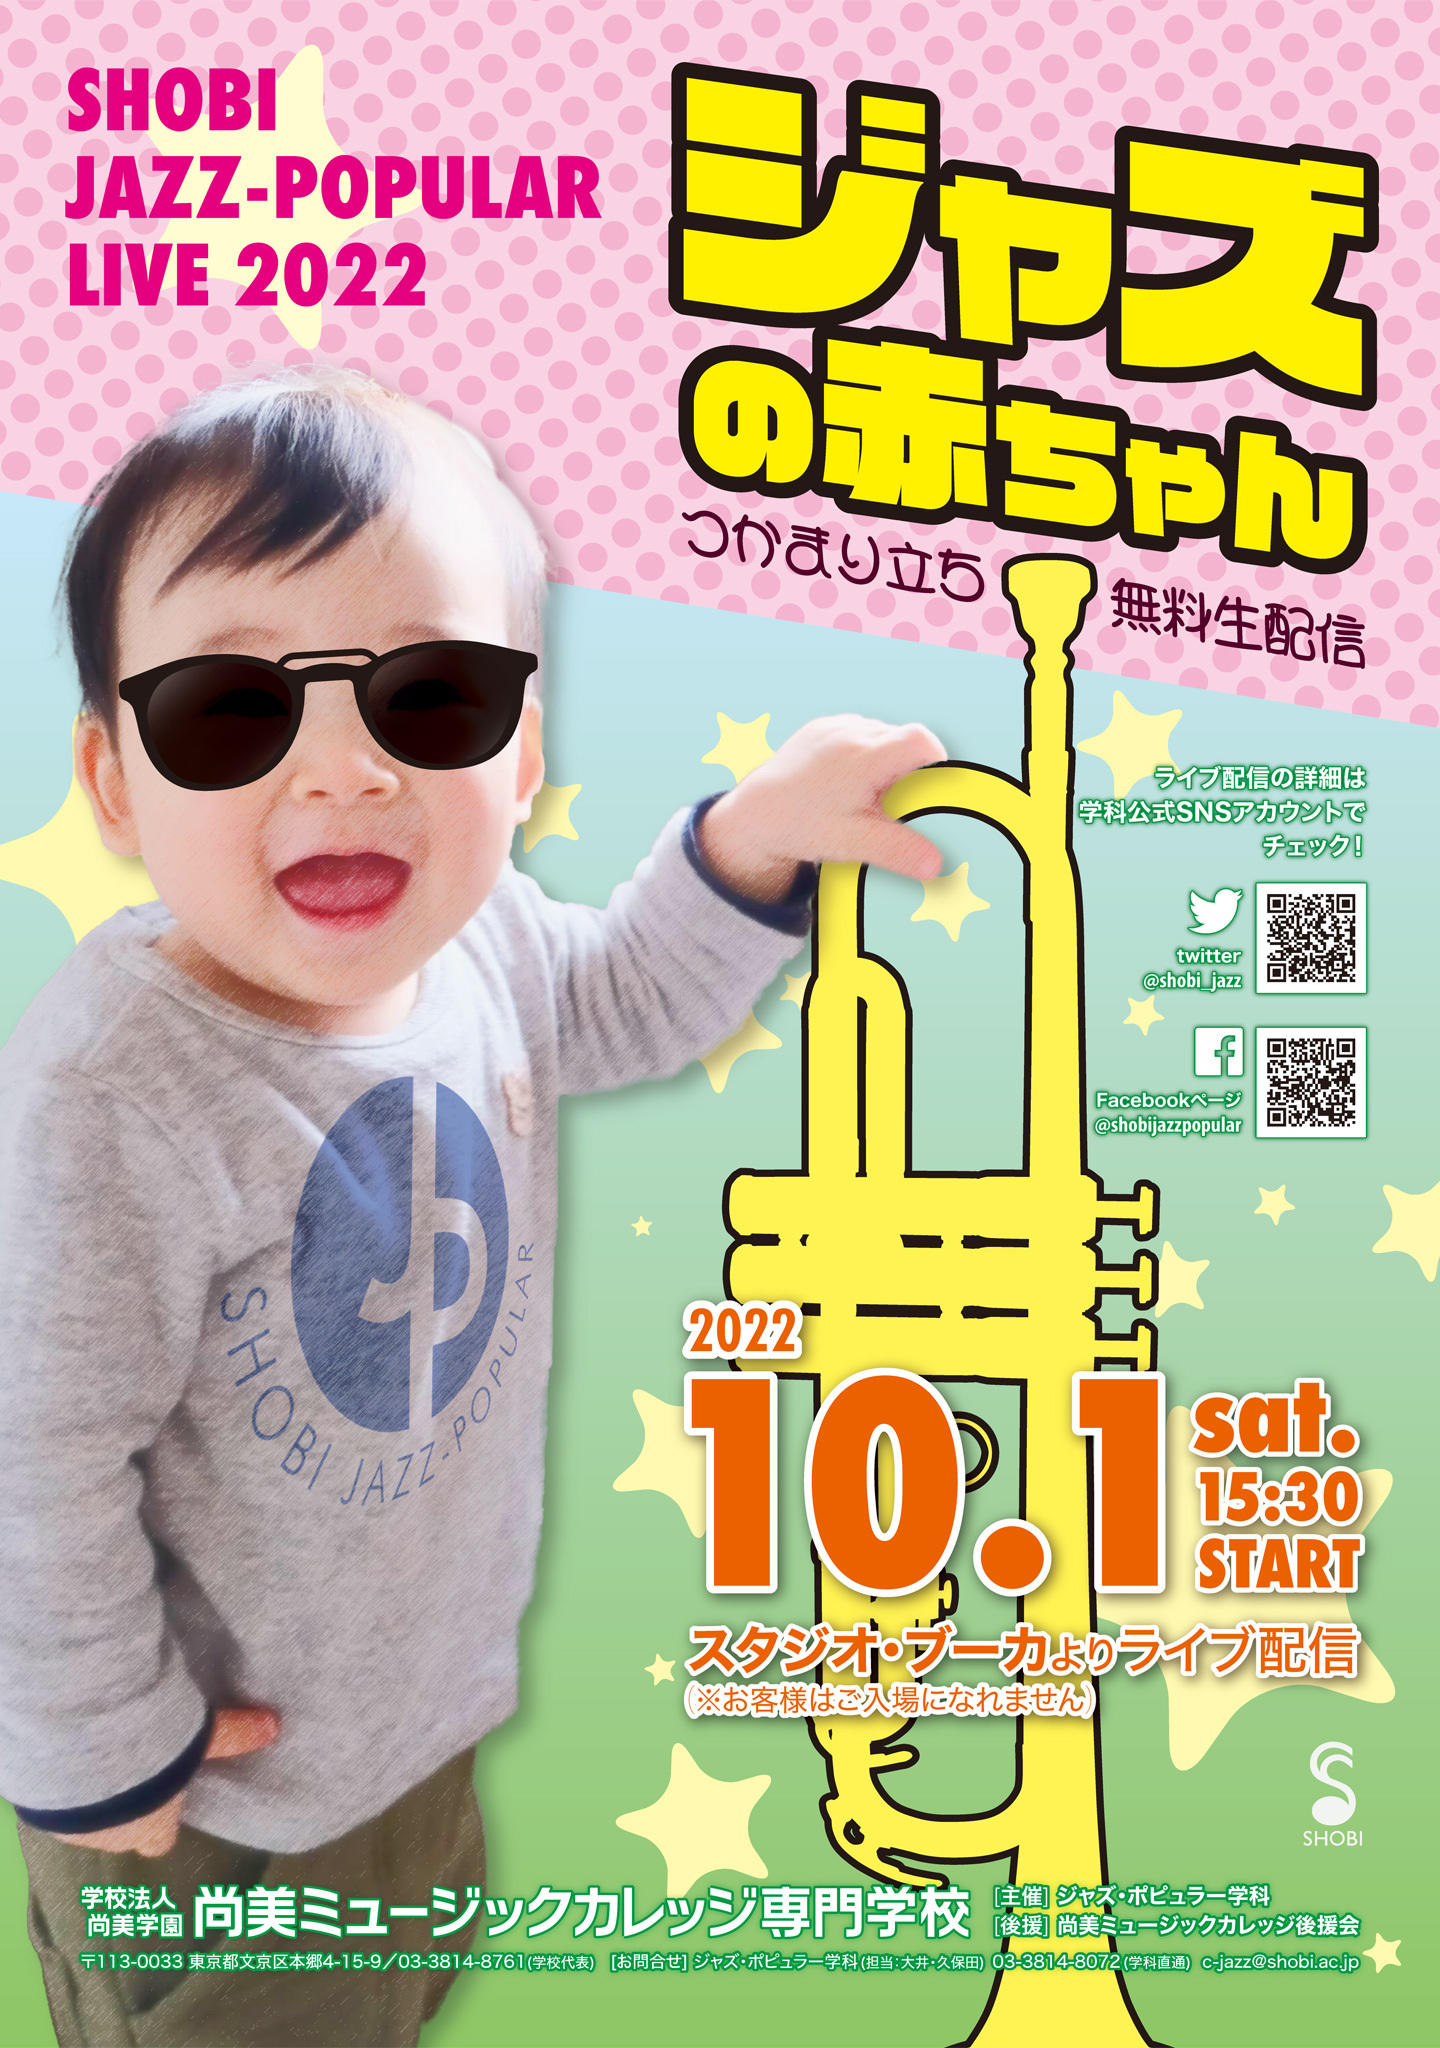 【10月1日開催】 SHOBI JAZZ-POPULAR LIVE 2022「ジャズの赤ちゃん」つかまり立ち無料生配信